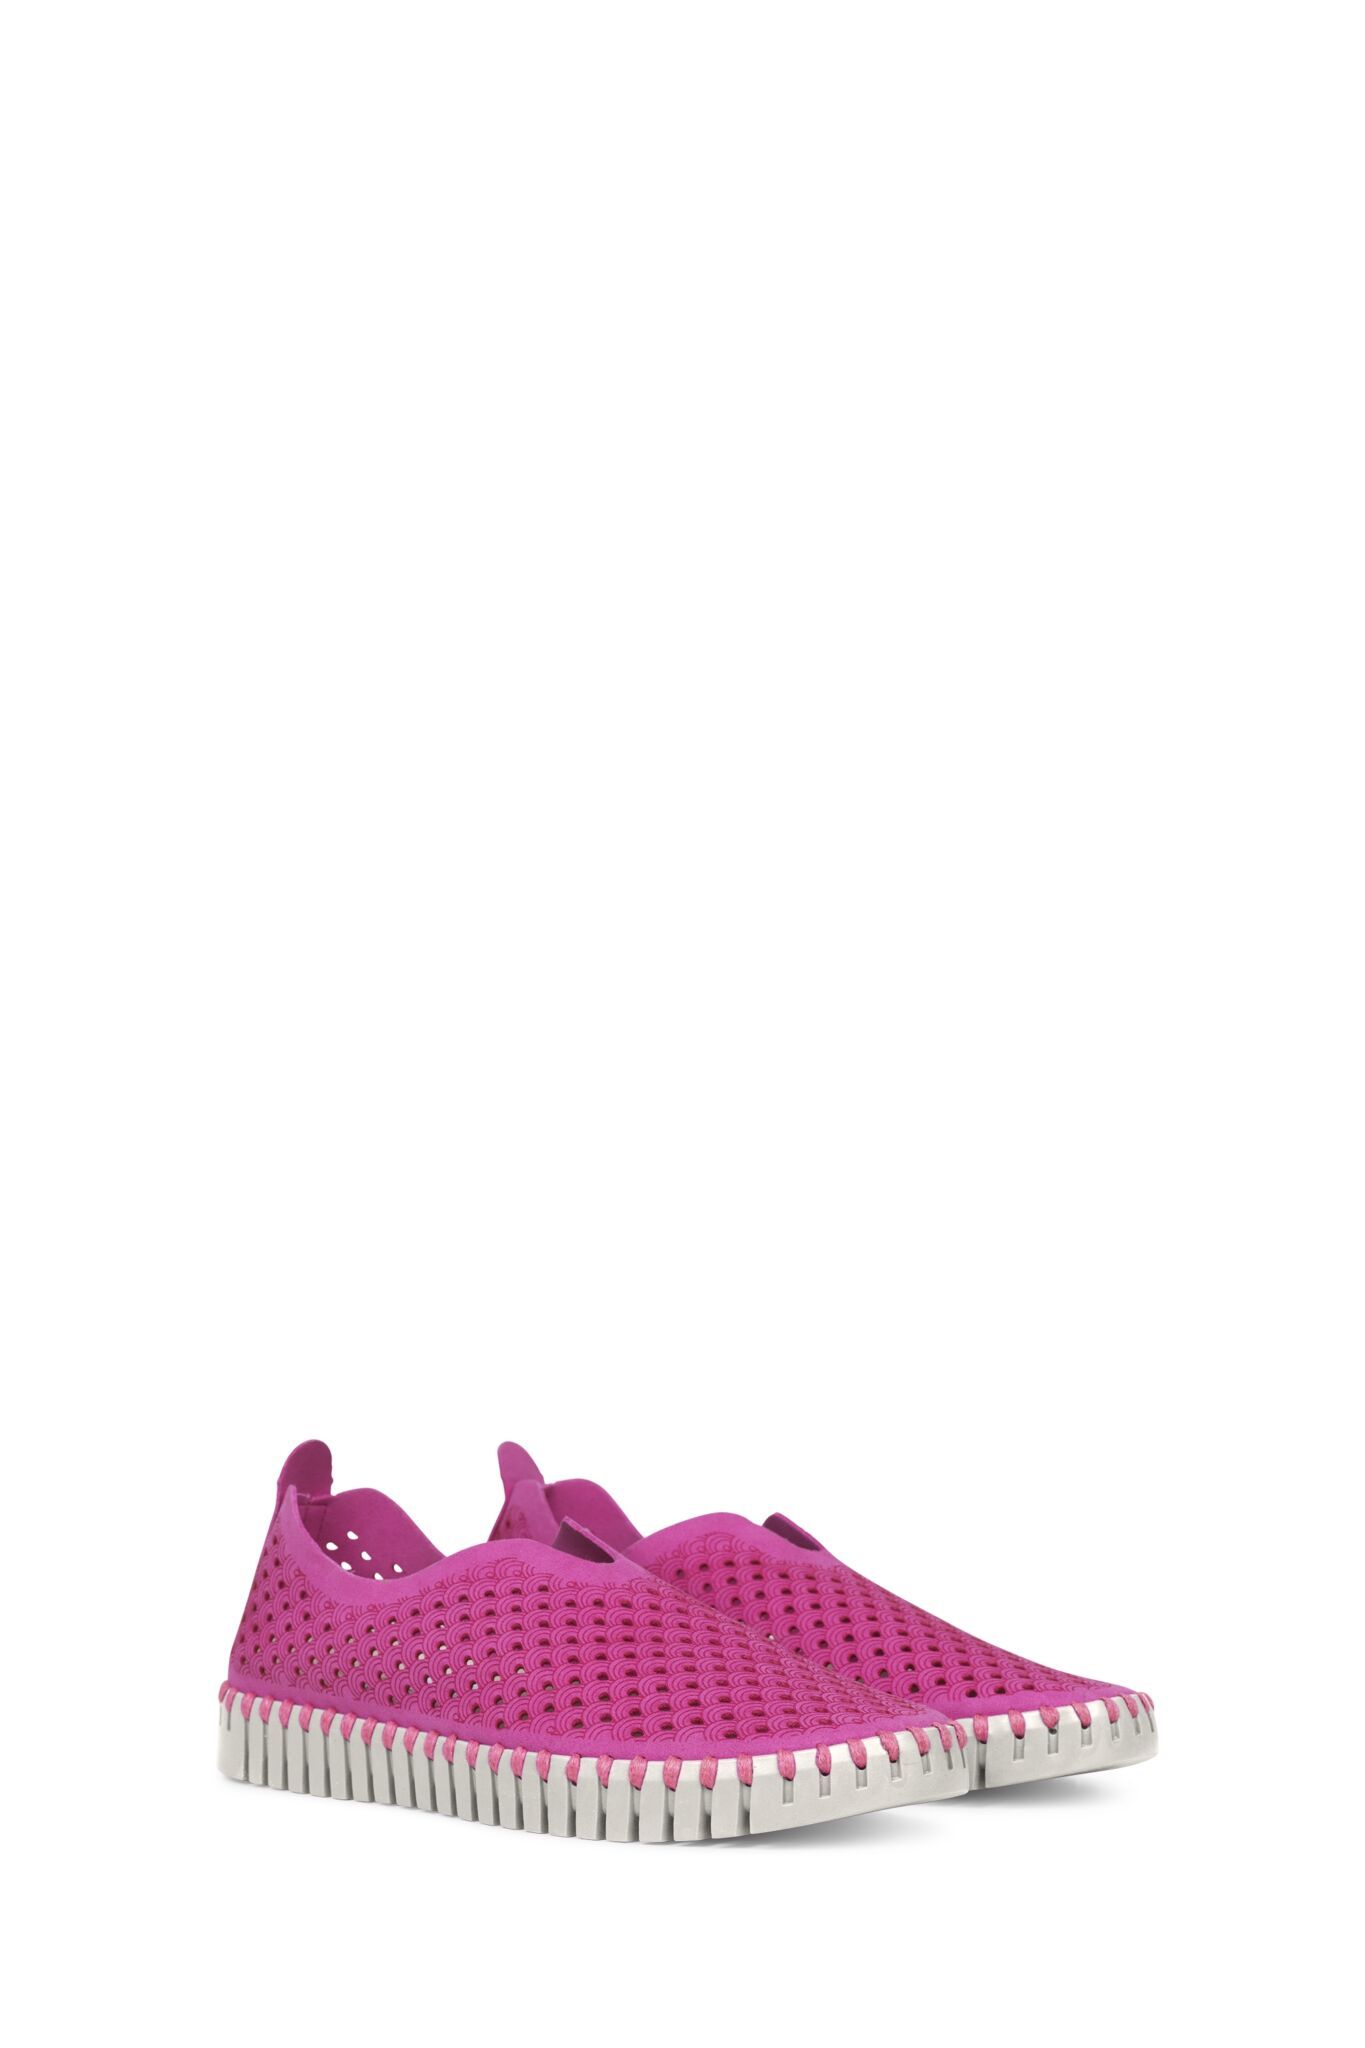 Et bestemt Afgift Indica Ilse Jacobsen sko dame TULIP3275 - Dame sko online i flotte farver!